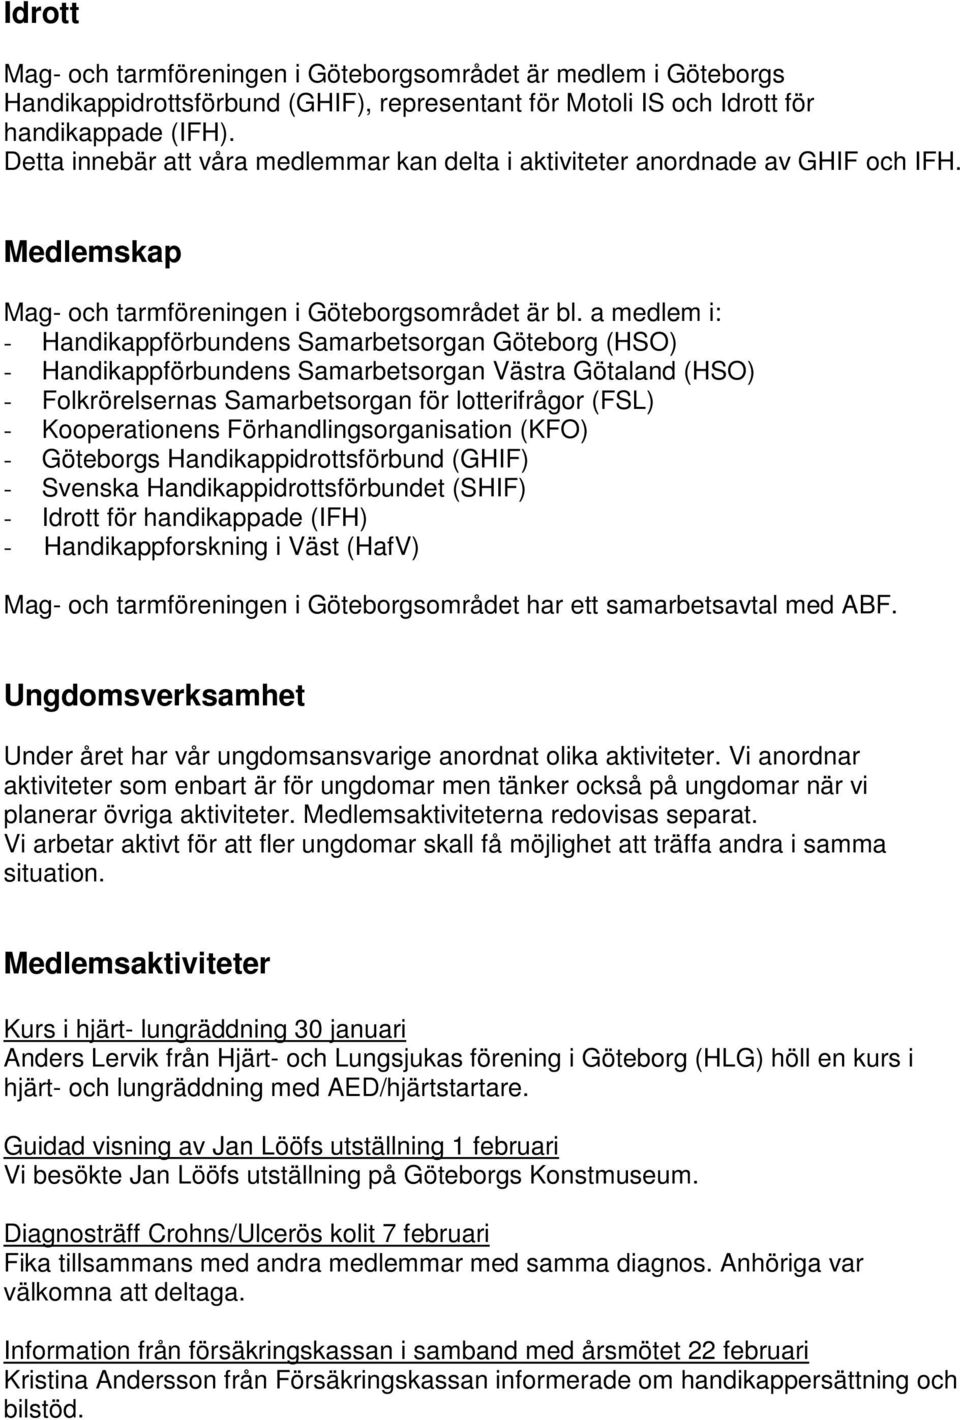 a medlem i: - Handikappförbundens Samarbetsorgan Göteborg (HSO) - Handikappförbundens Samarbetsorgan Västra Götaland (HSO) - Folkrörelsernas Samarbetsorgan för lotterifrågor (FSL) - Kooperationens